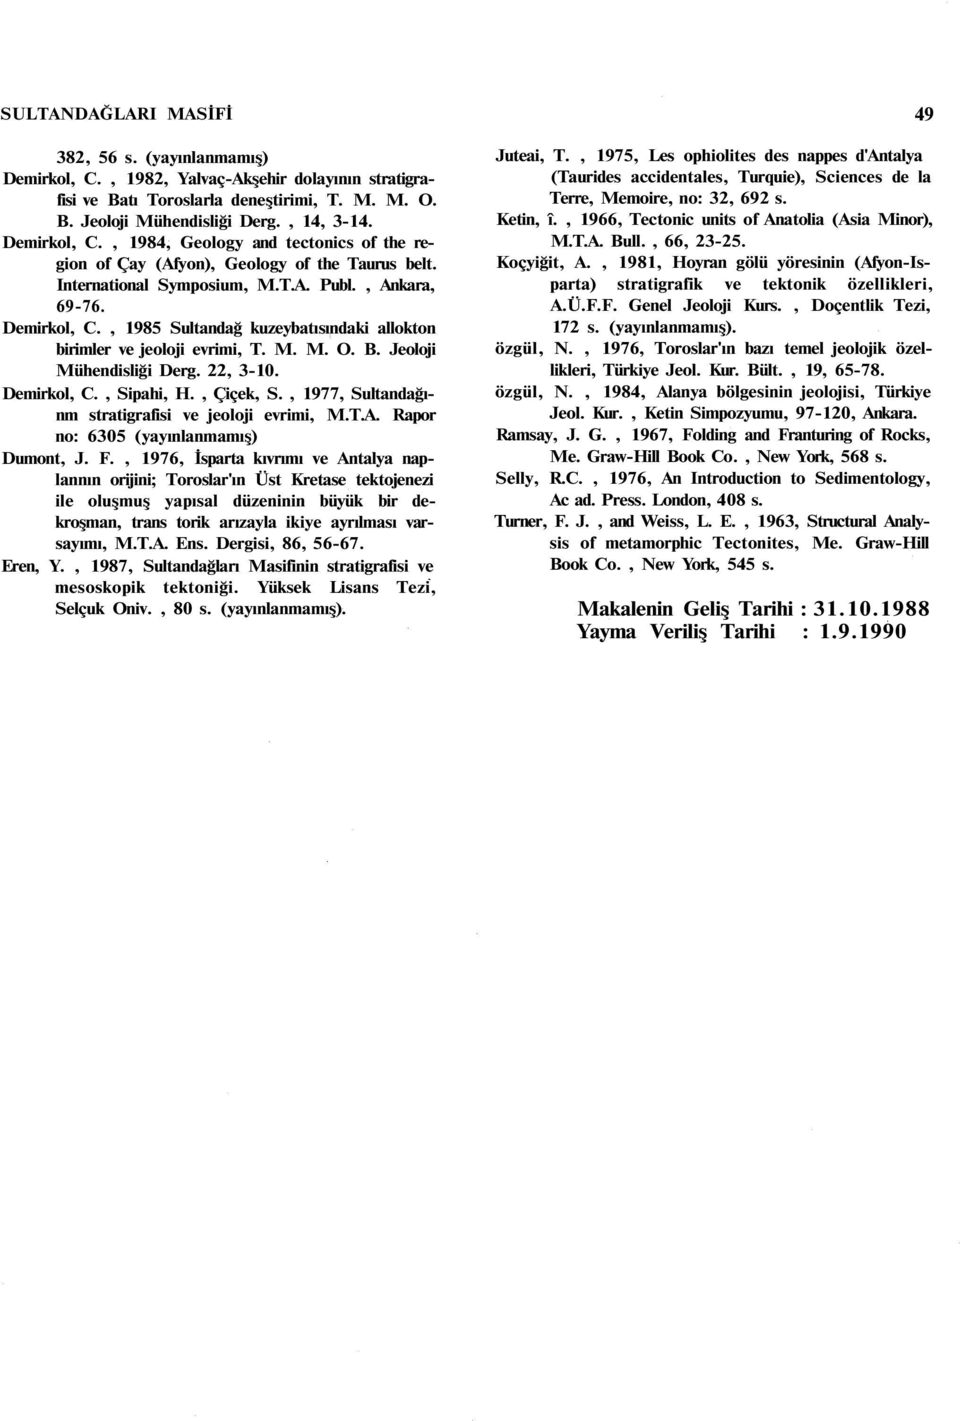 , 1985 Sultandağ kuzeybatısındaki allokton birimler ve jeoloji evrimi, T. M. M. O. B. Jeoloji Mühendisliği Derg. 22, 3-10. Demirkol, C., Sipahi, H., Çiçek, S.